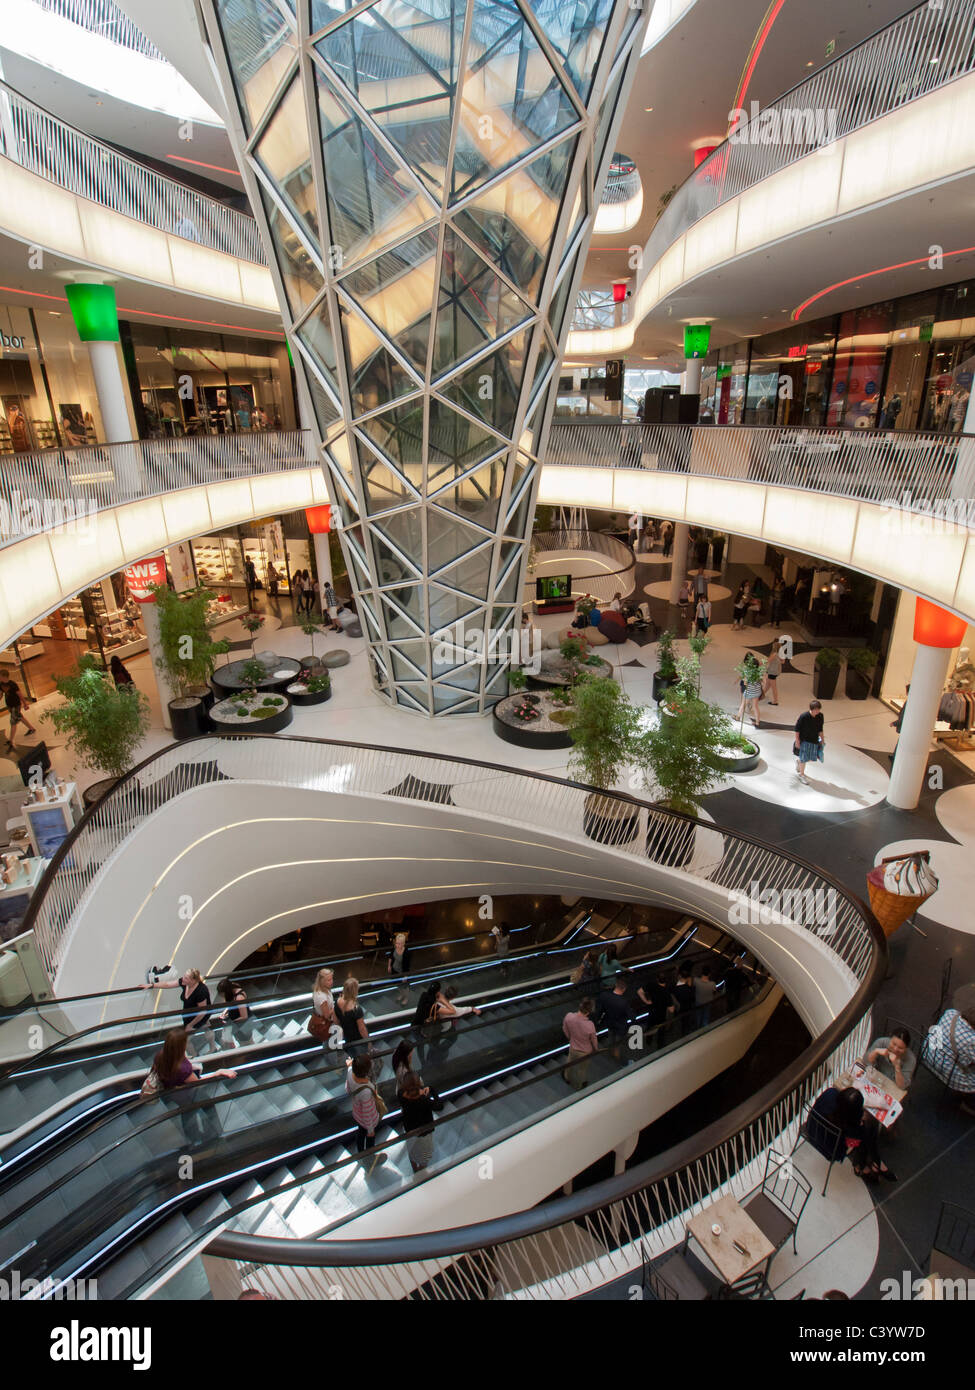 Innenraum des neuen futuristische Architektur des Einkaufszentrums MyZeil in Frankfurt am Main Deutschland Stockfoto